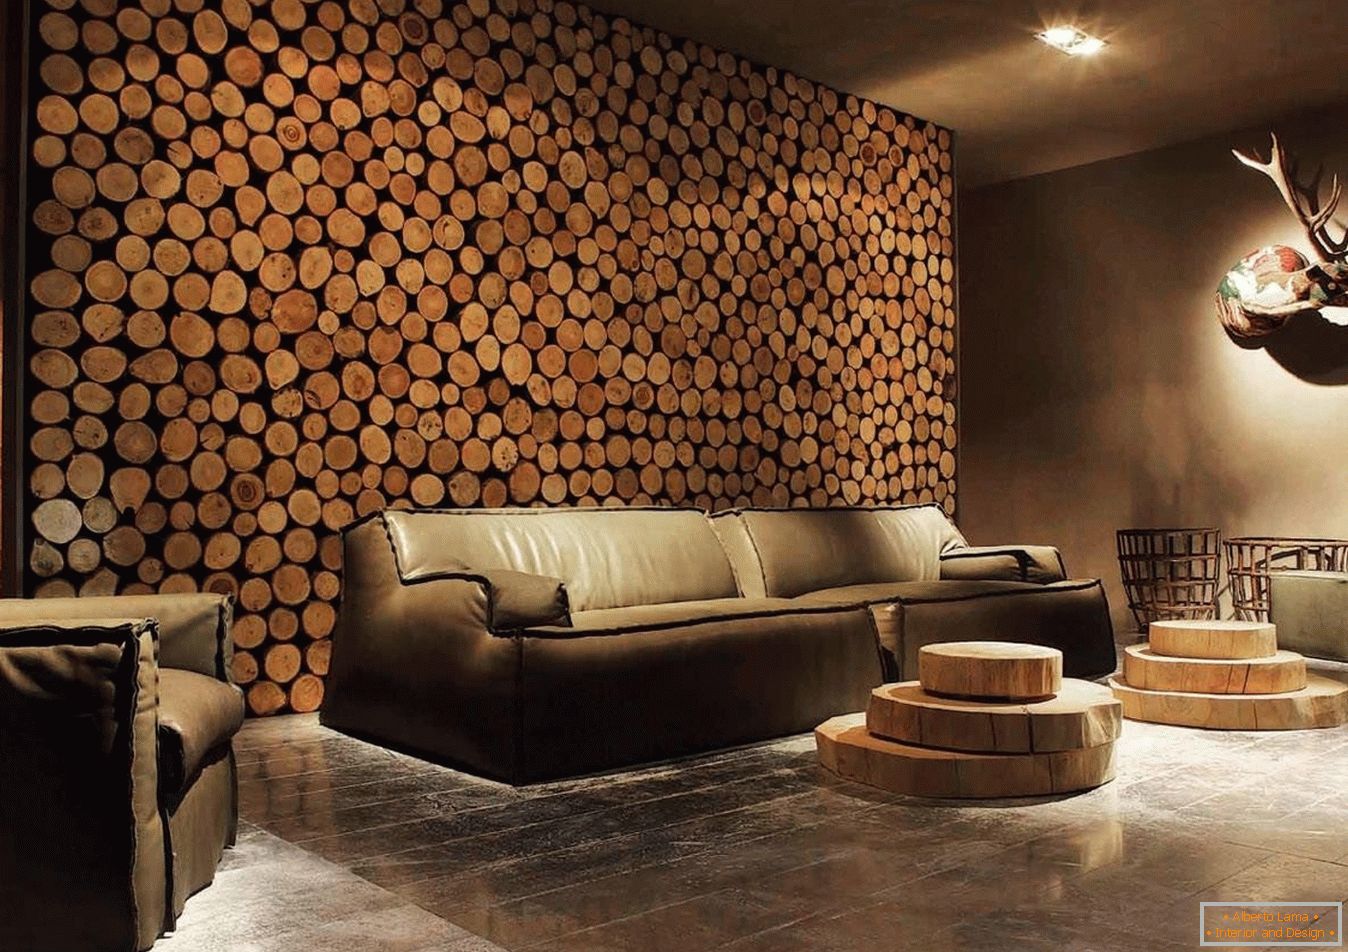 Drewniane szpile z drewna jako dekoracja ścian salonu